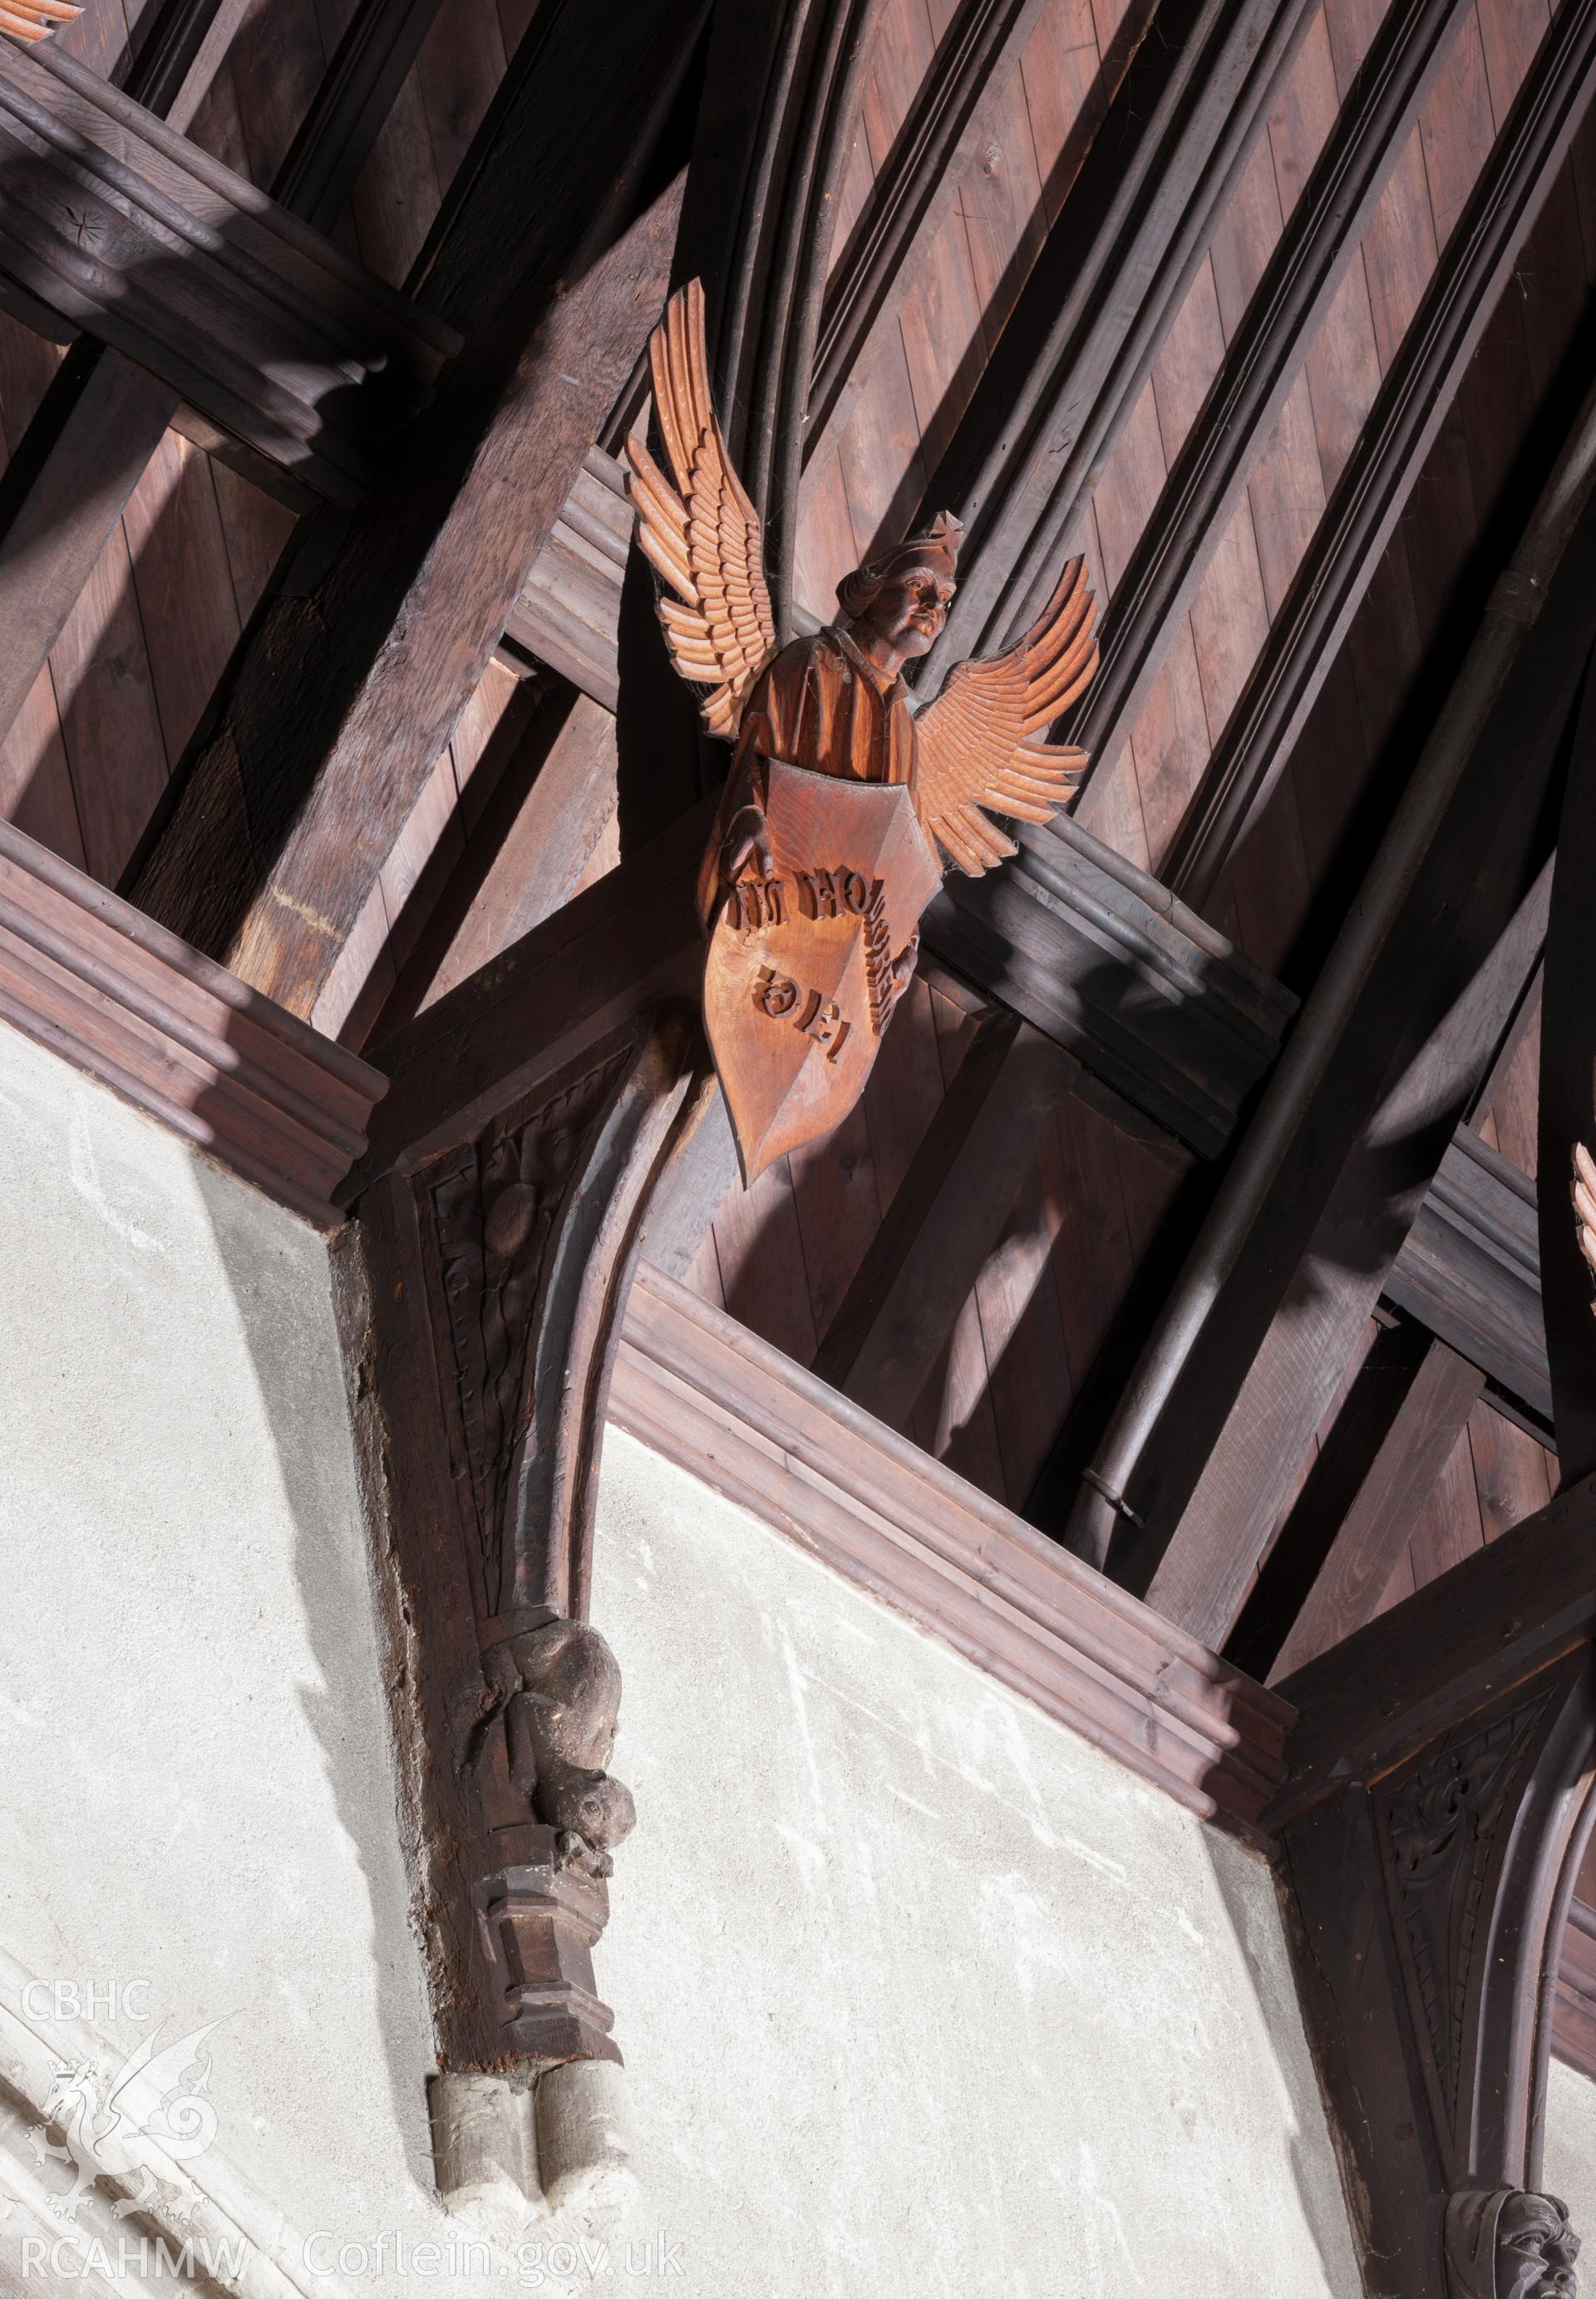 Detail of angel on hammer beam.